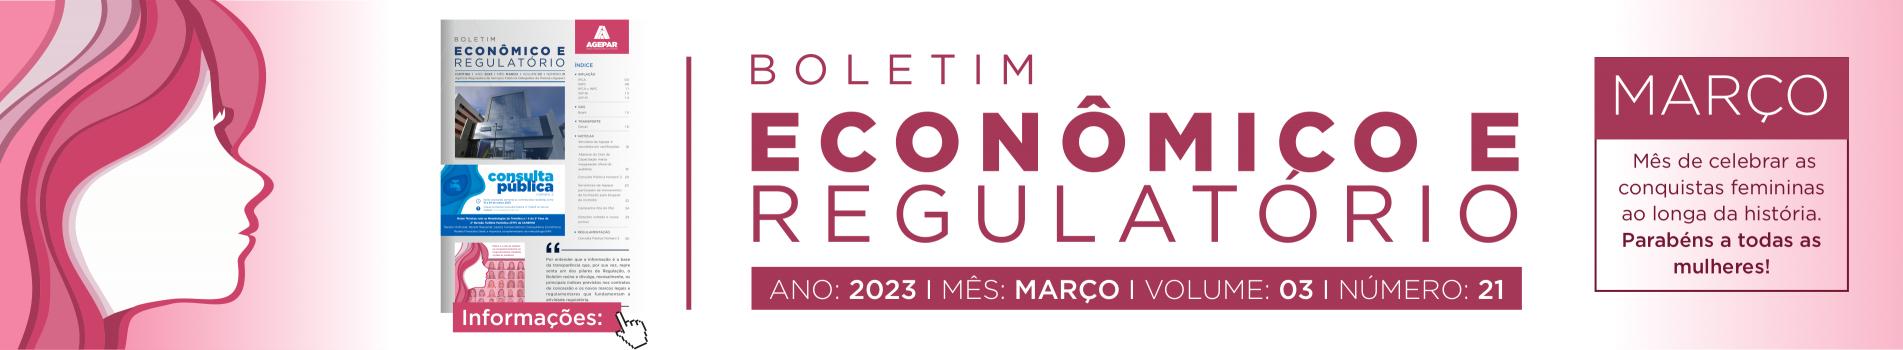 Boletim Econômico e Regulatório - número 21 - março 2023